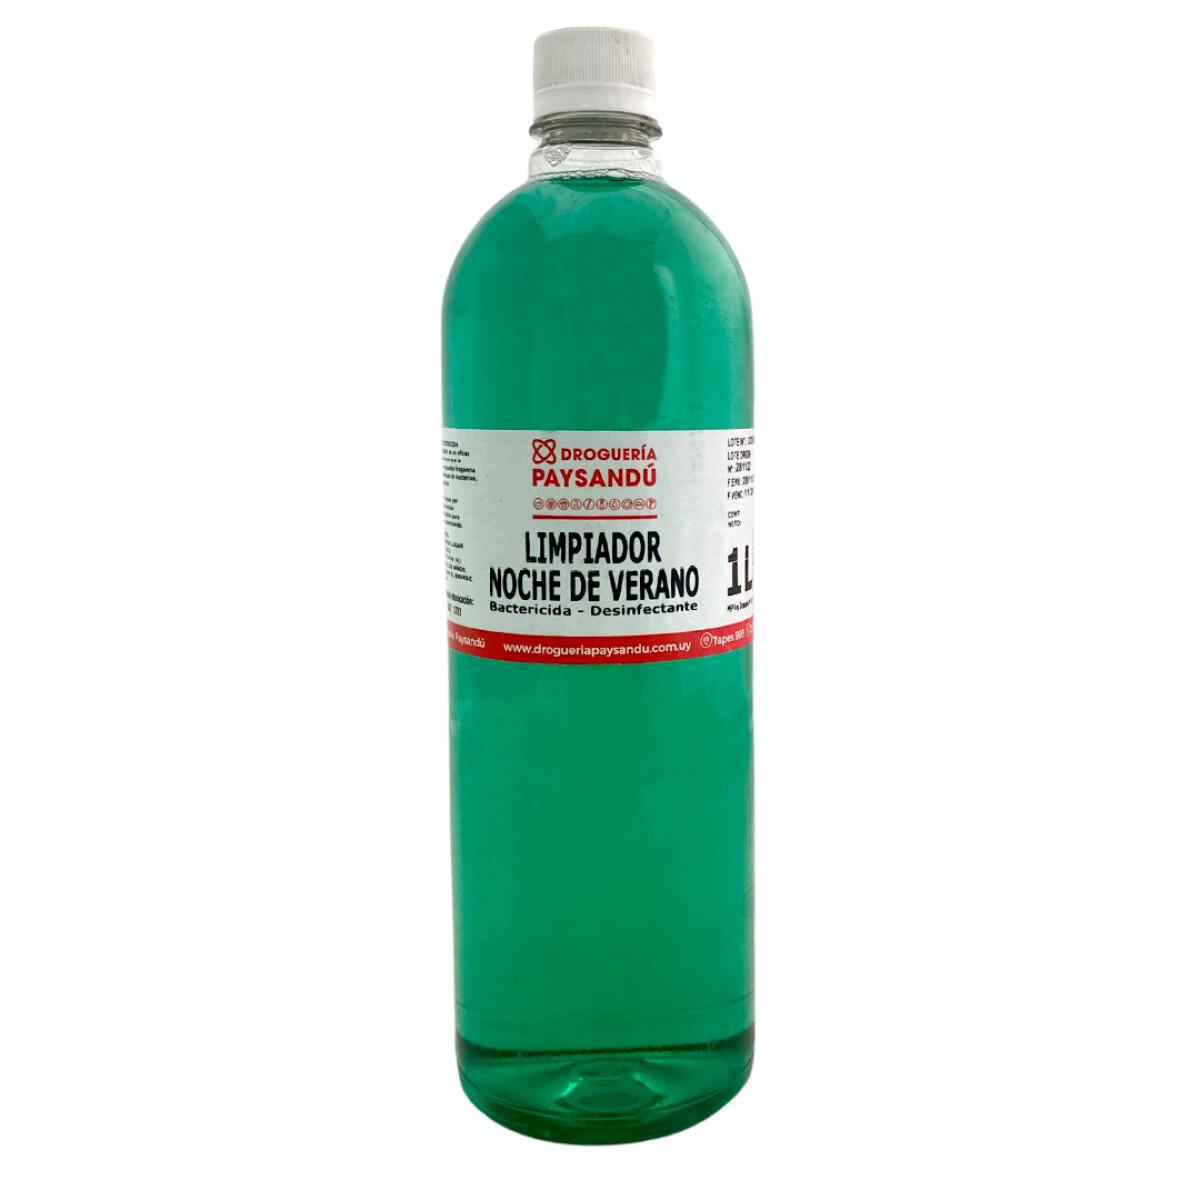 Limpiador noche de verano bactericida - desinfectante 1 L 